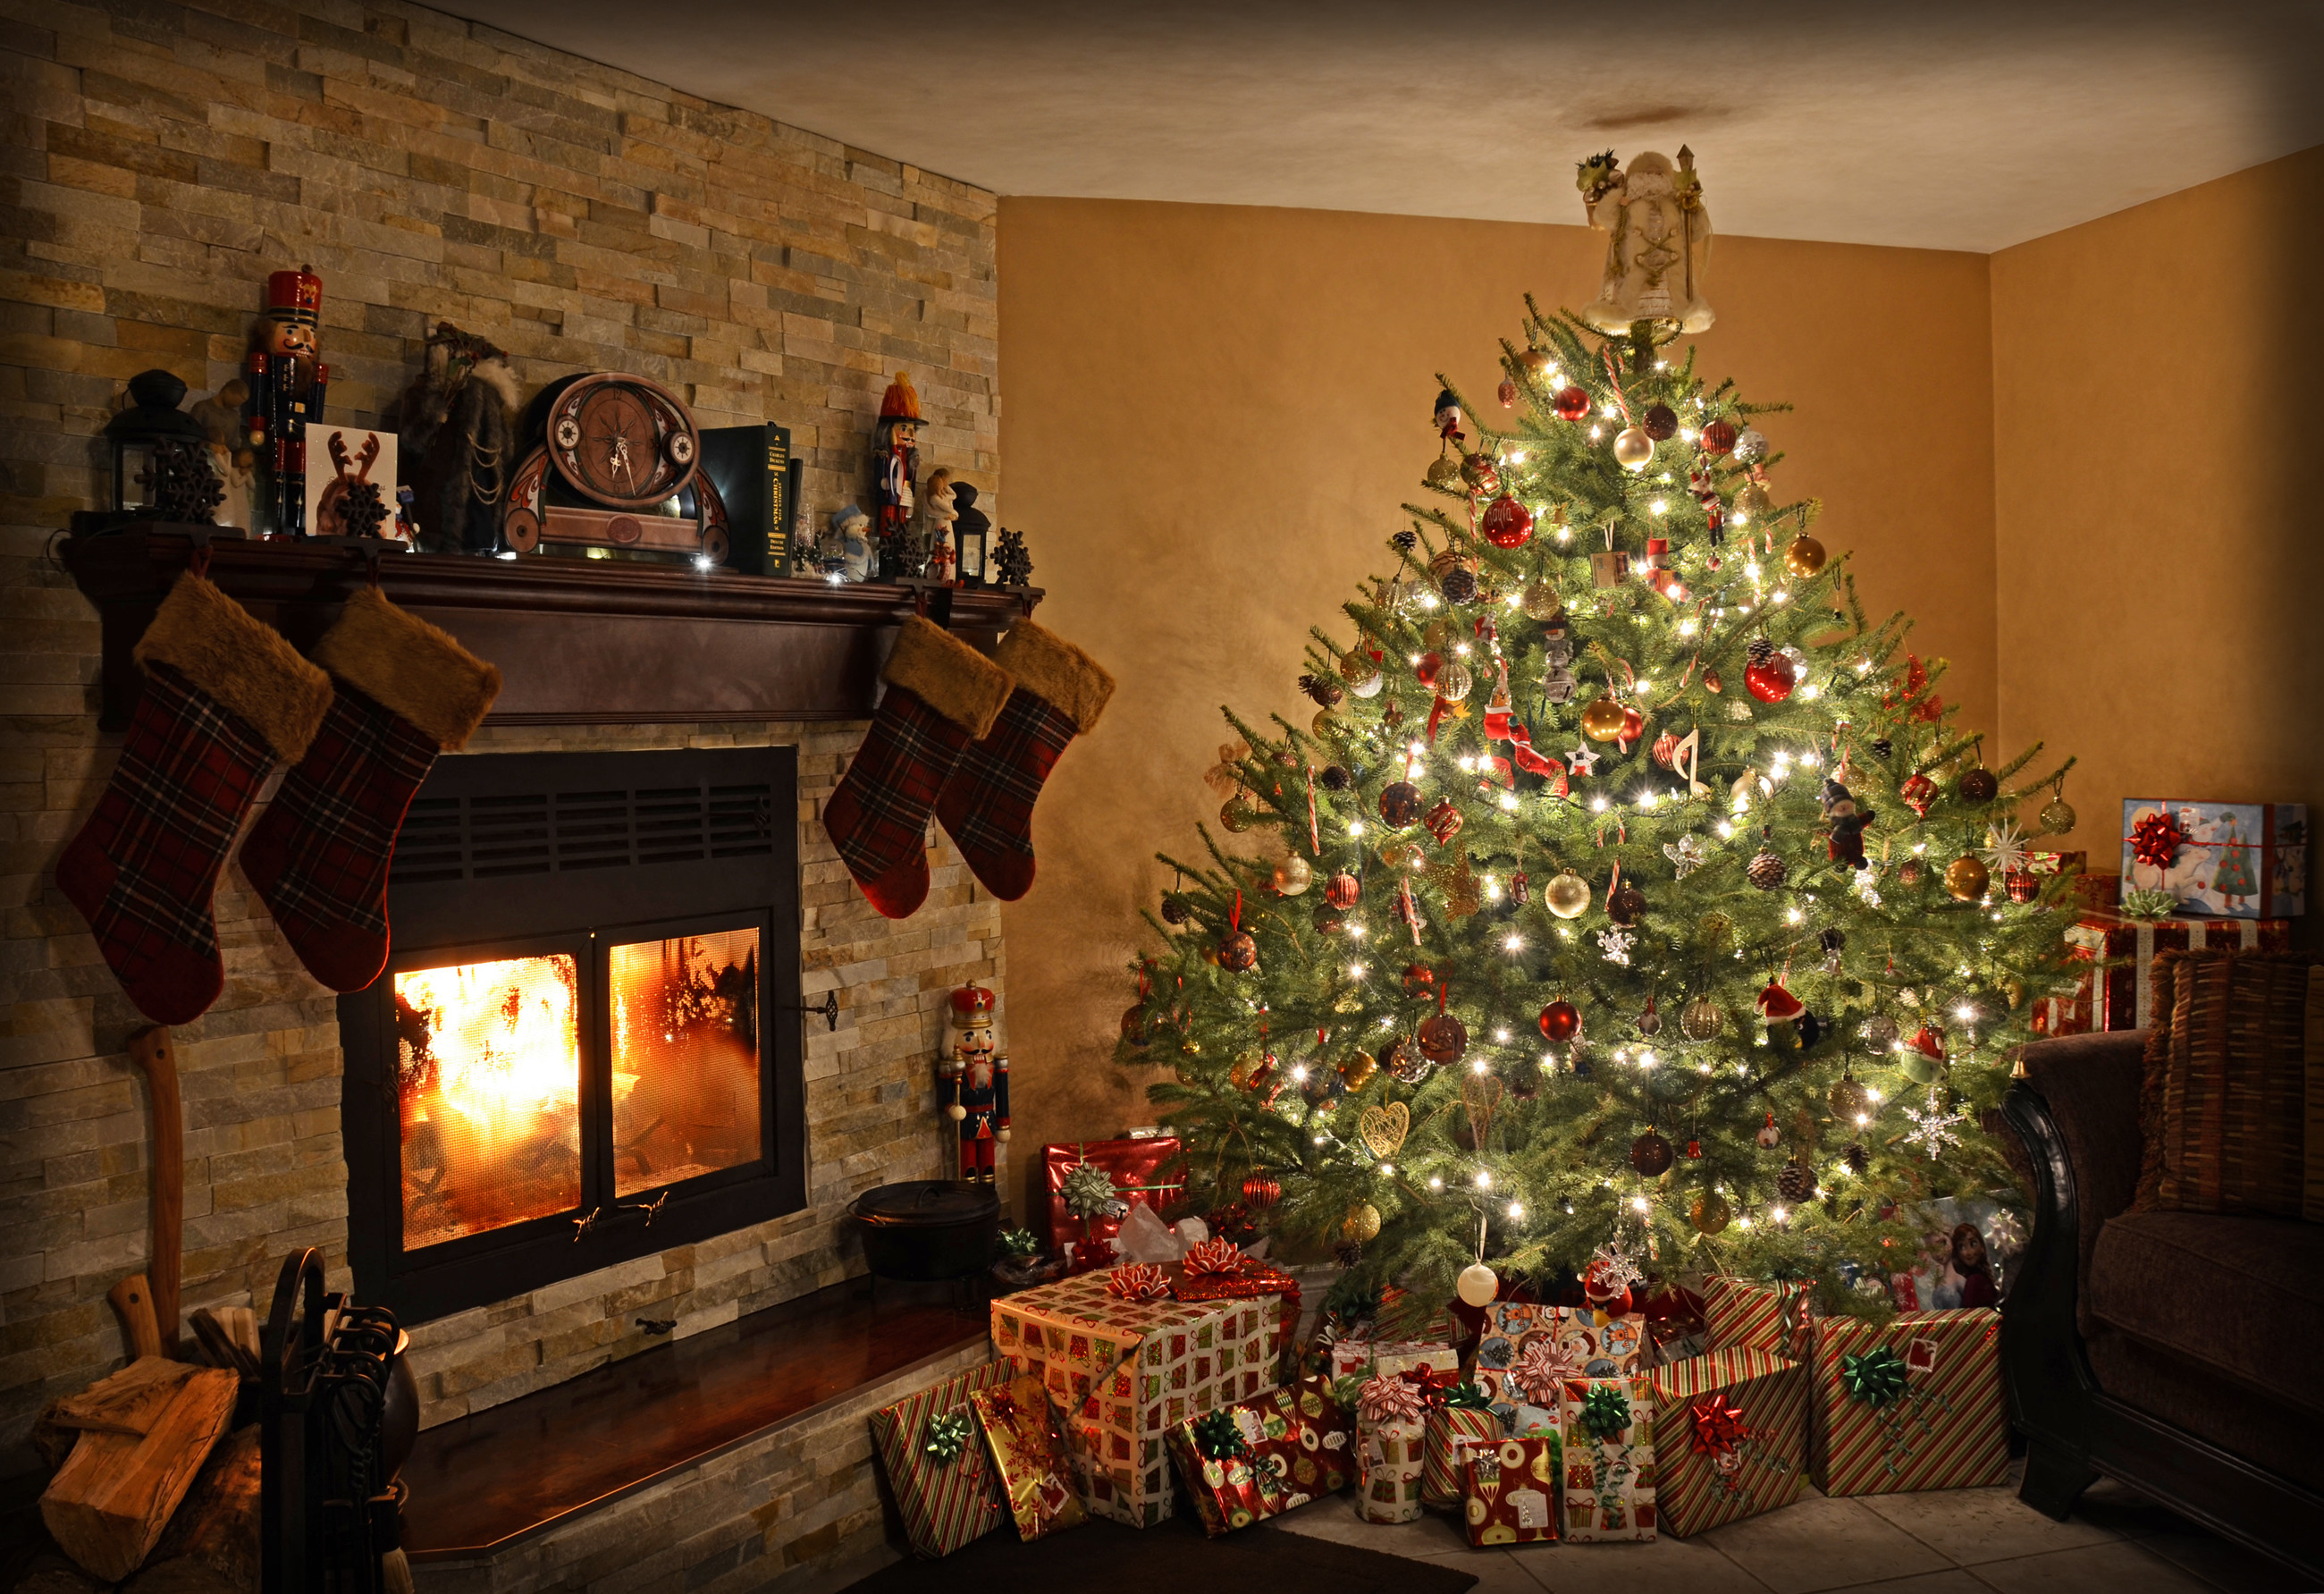 2600x1783 Holiday - Christmas Christmas Lights Christmas Ornaments Christmas Tree  Gift Fireplace Wallpaper